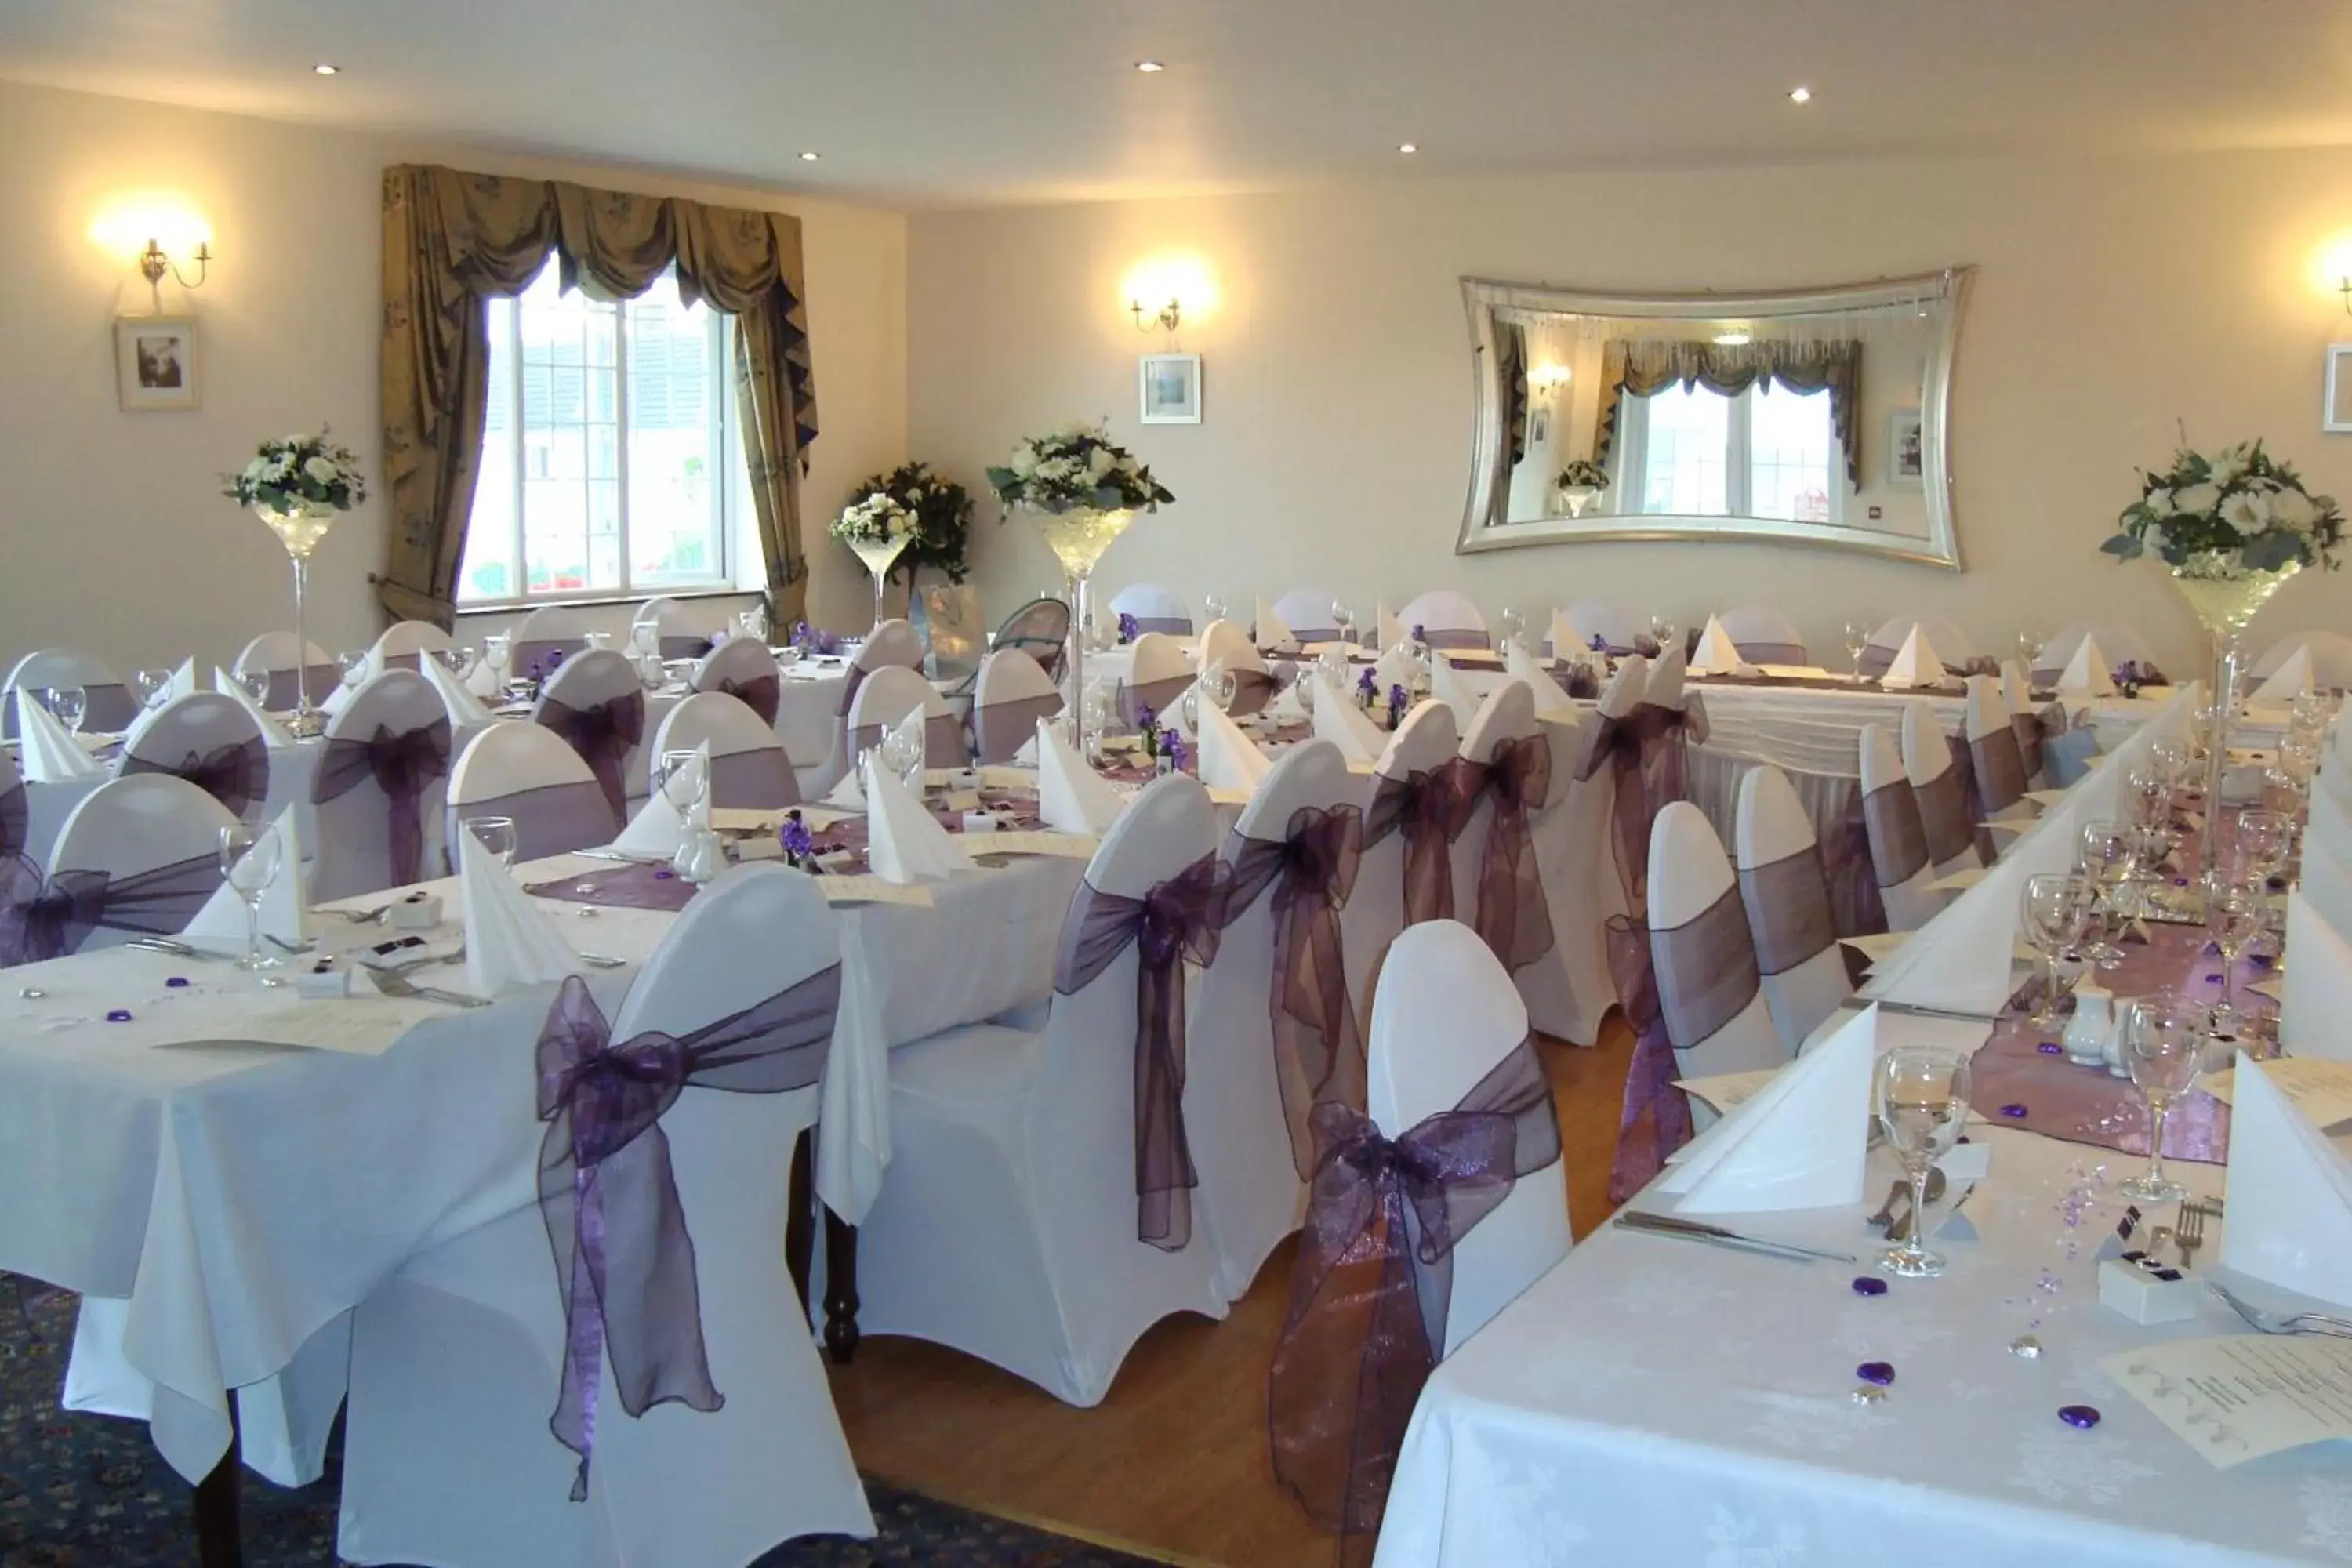 Banquet/Function facilities, Banquet Facilities in Solway Lodge Hotel